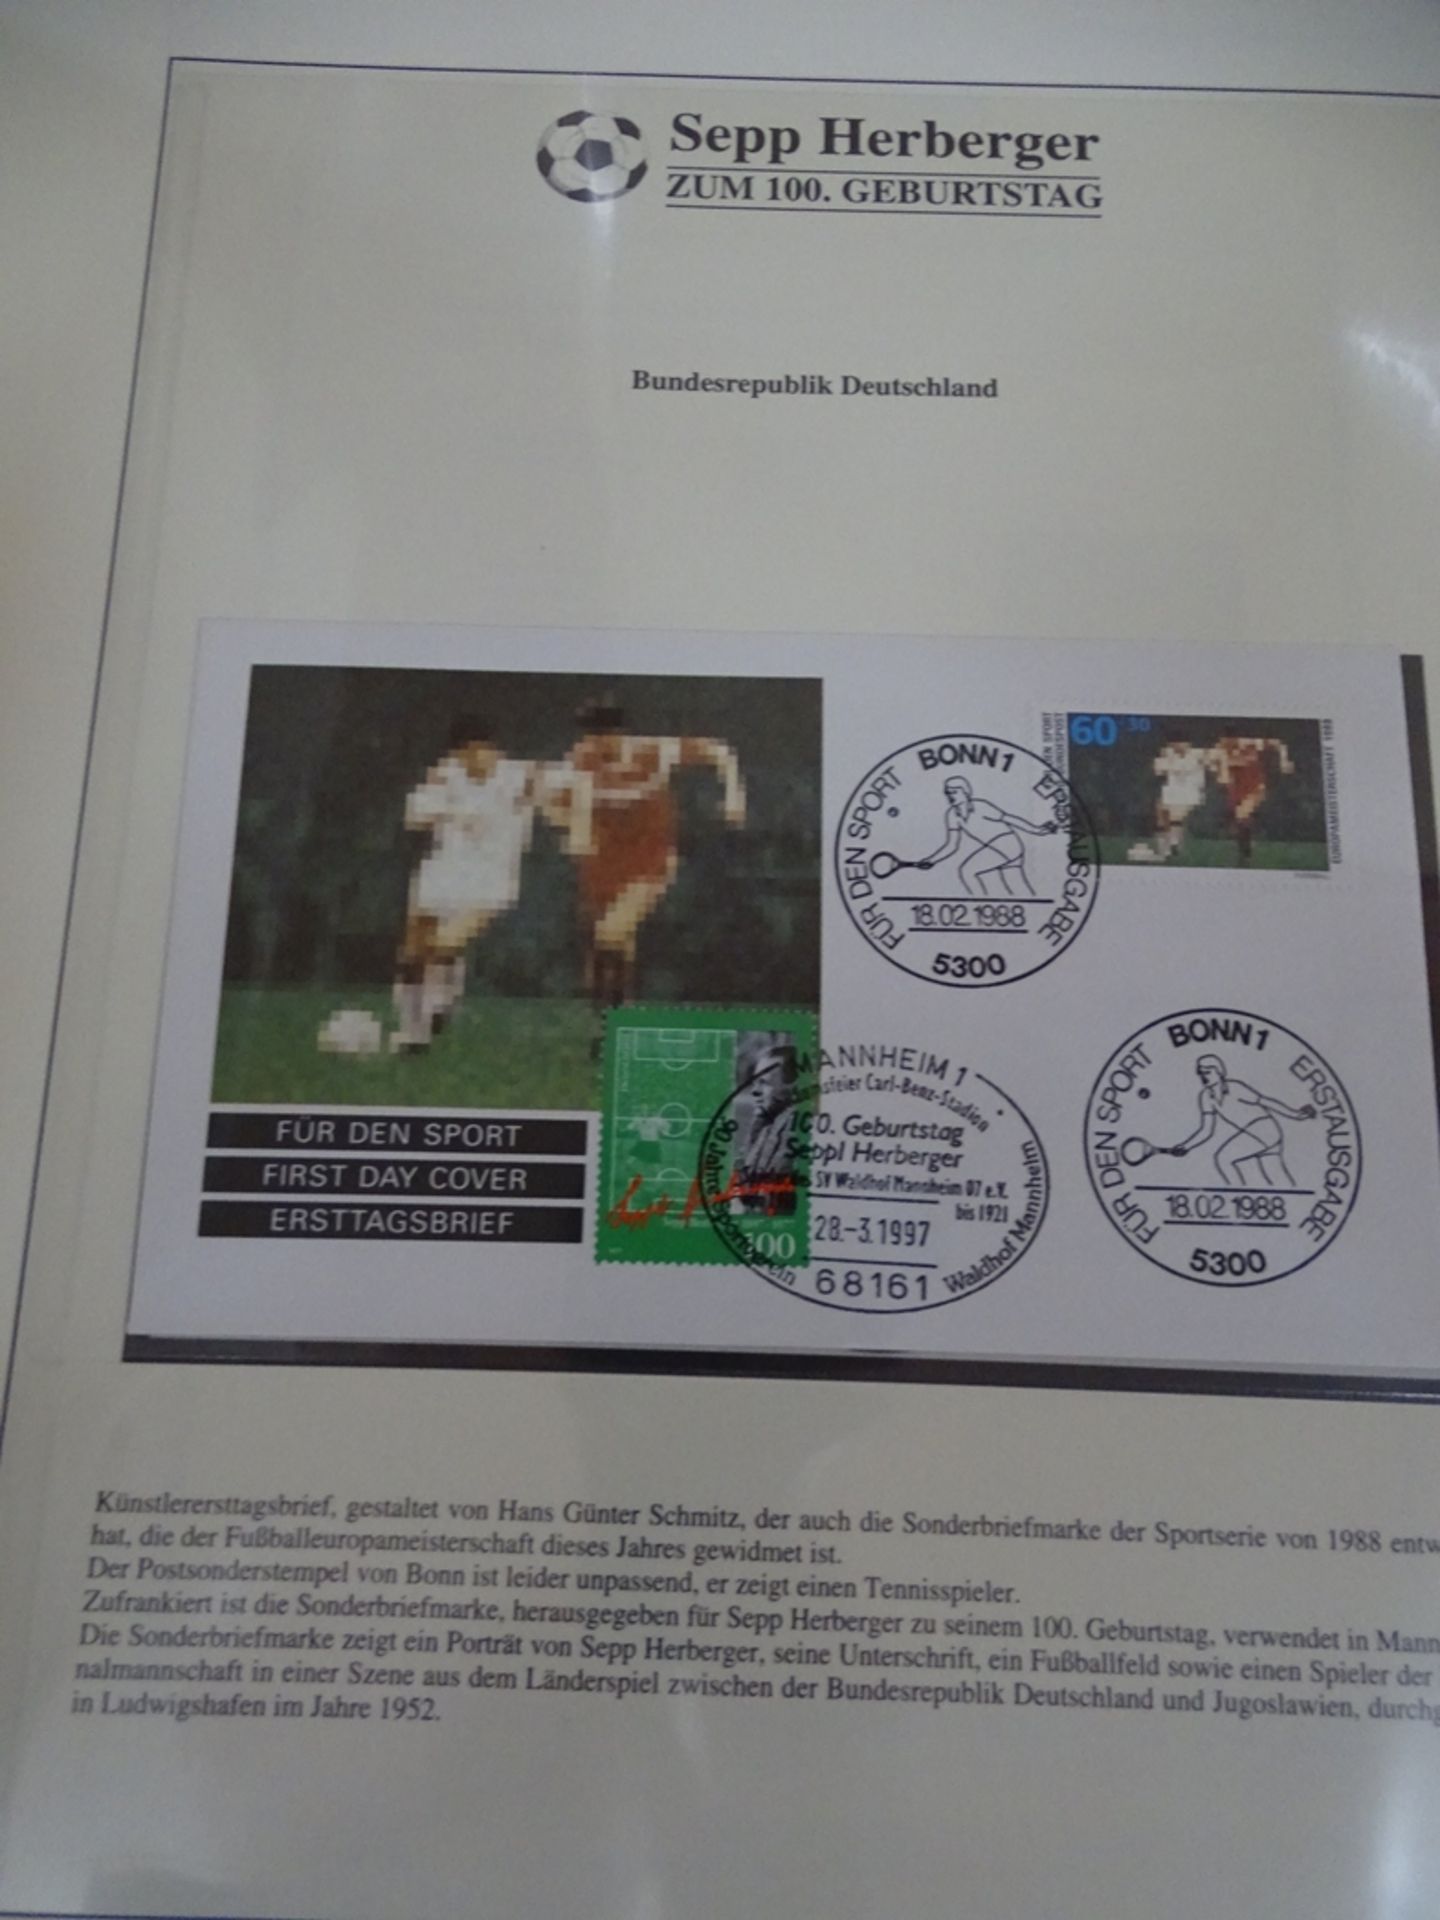 4x lomplette Linbder Ordner "Italia 90" Briefmarkenalbum zur Fussball- Weltmeisterschaft, official - Image 5 of 13